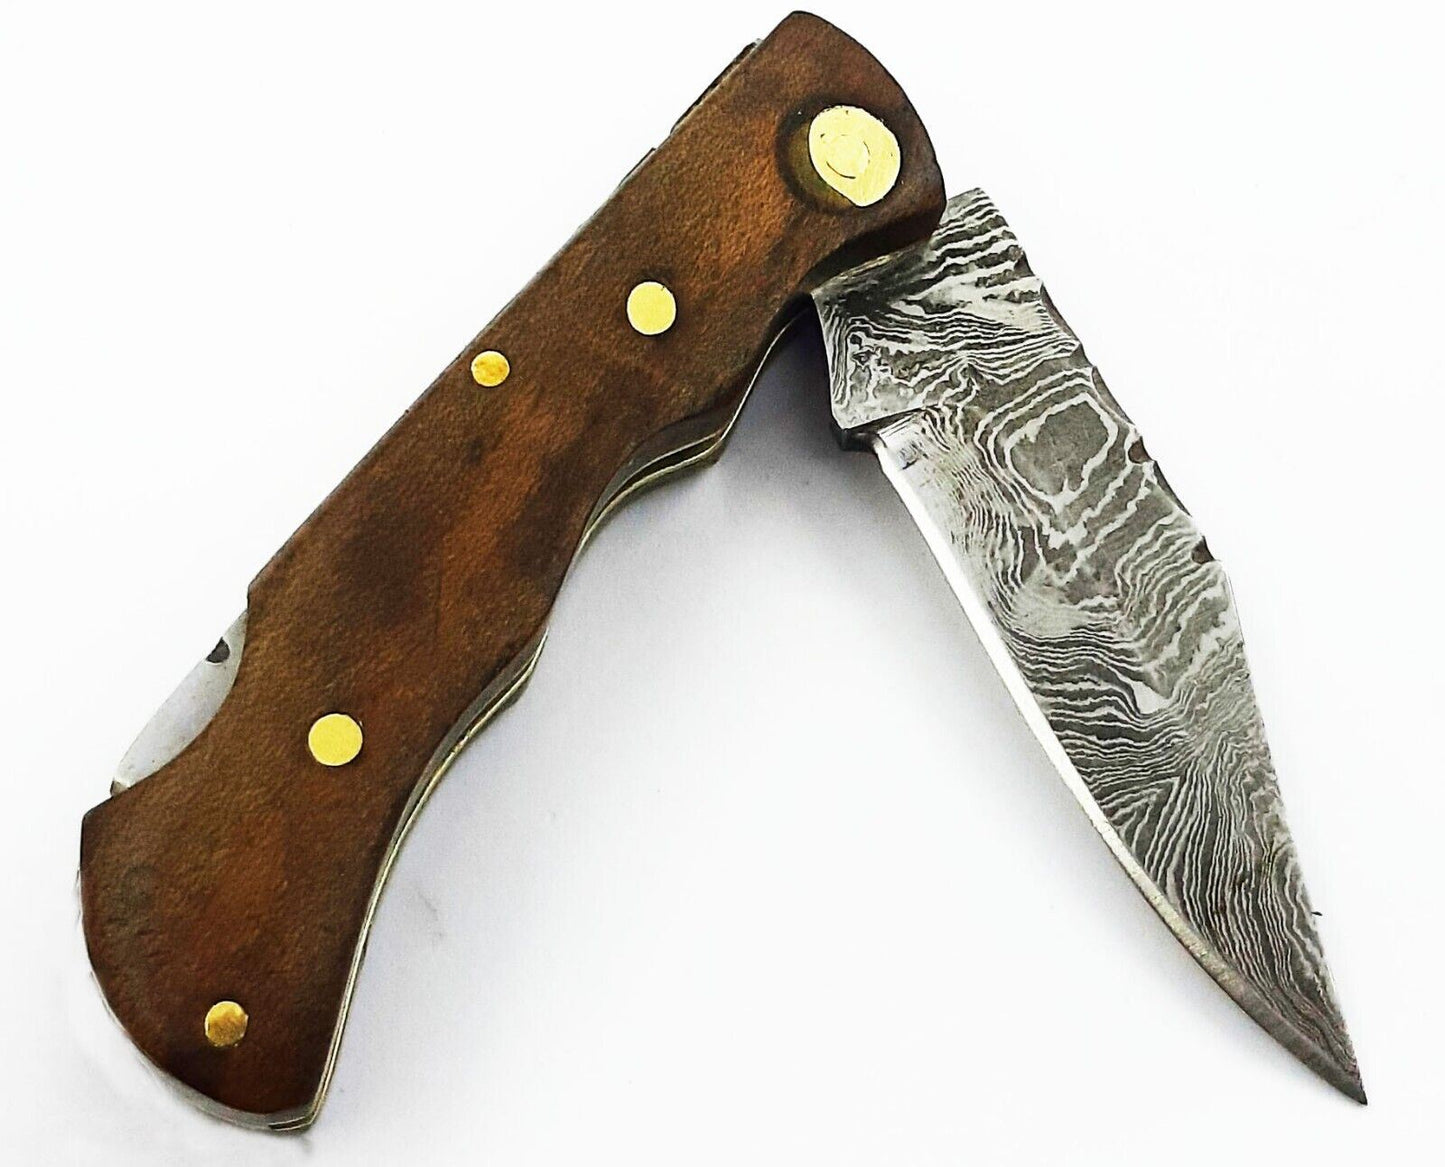 SHARDBLADE HAND FORGED Damascus Steel Lock back Folding Pocket Knife with Sheath